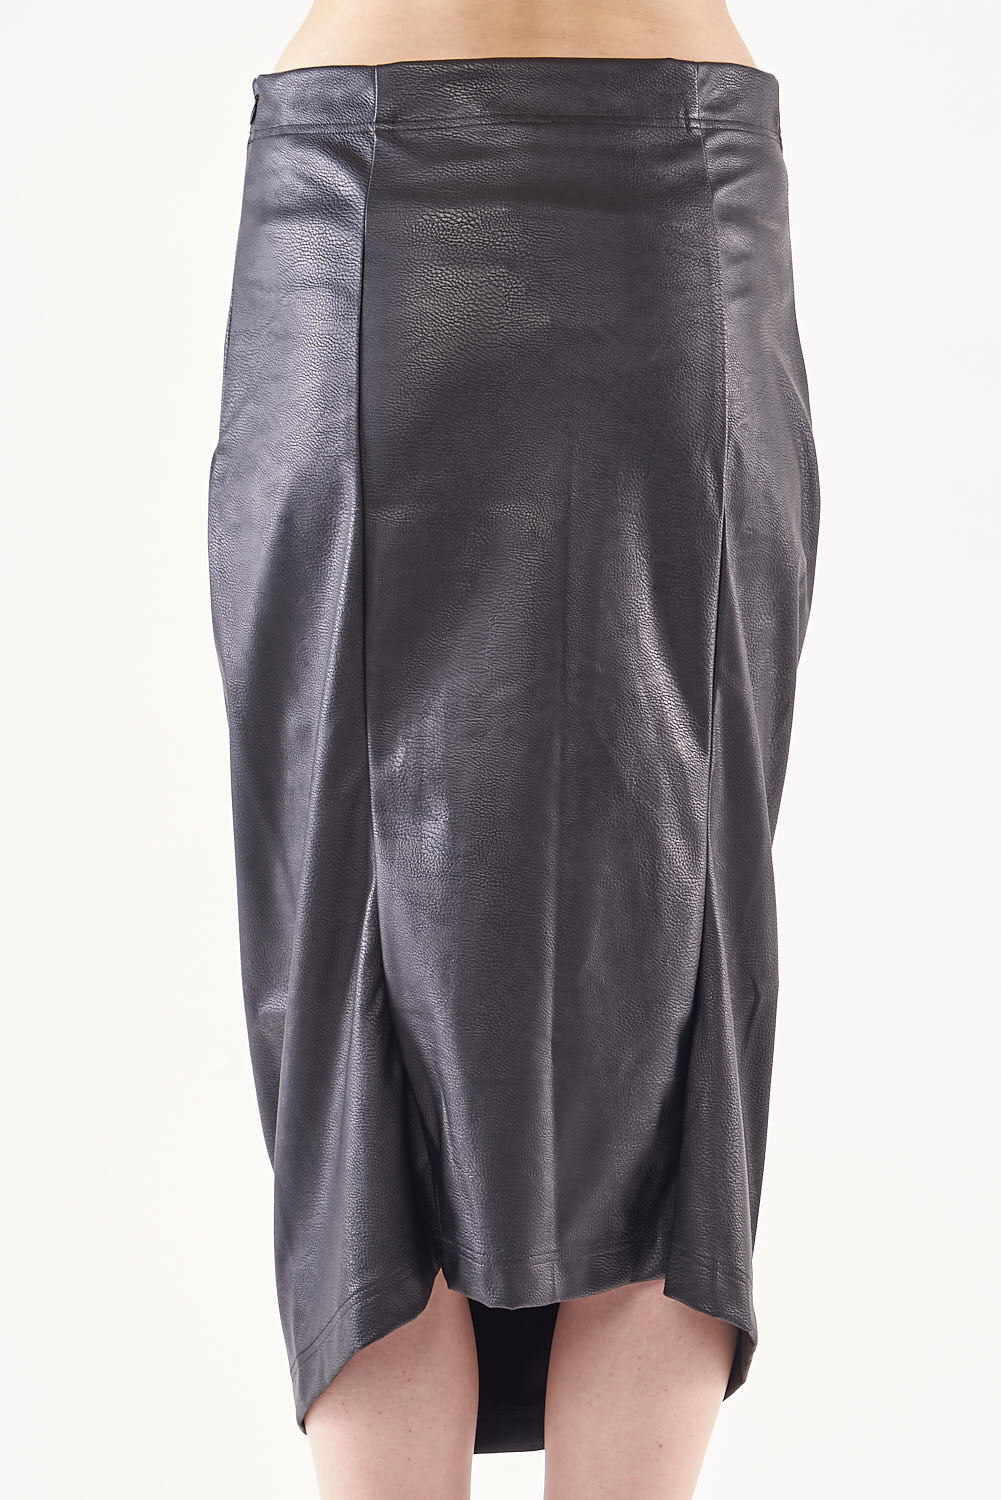 RUB-332-0302 Leather Look Skirt